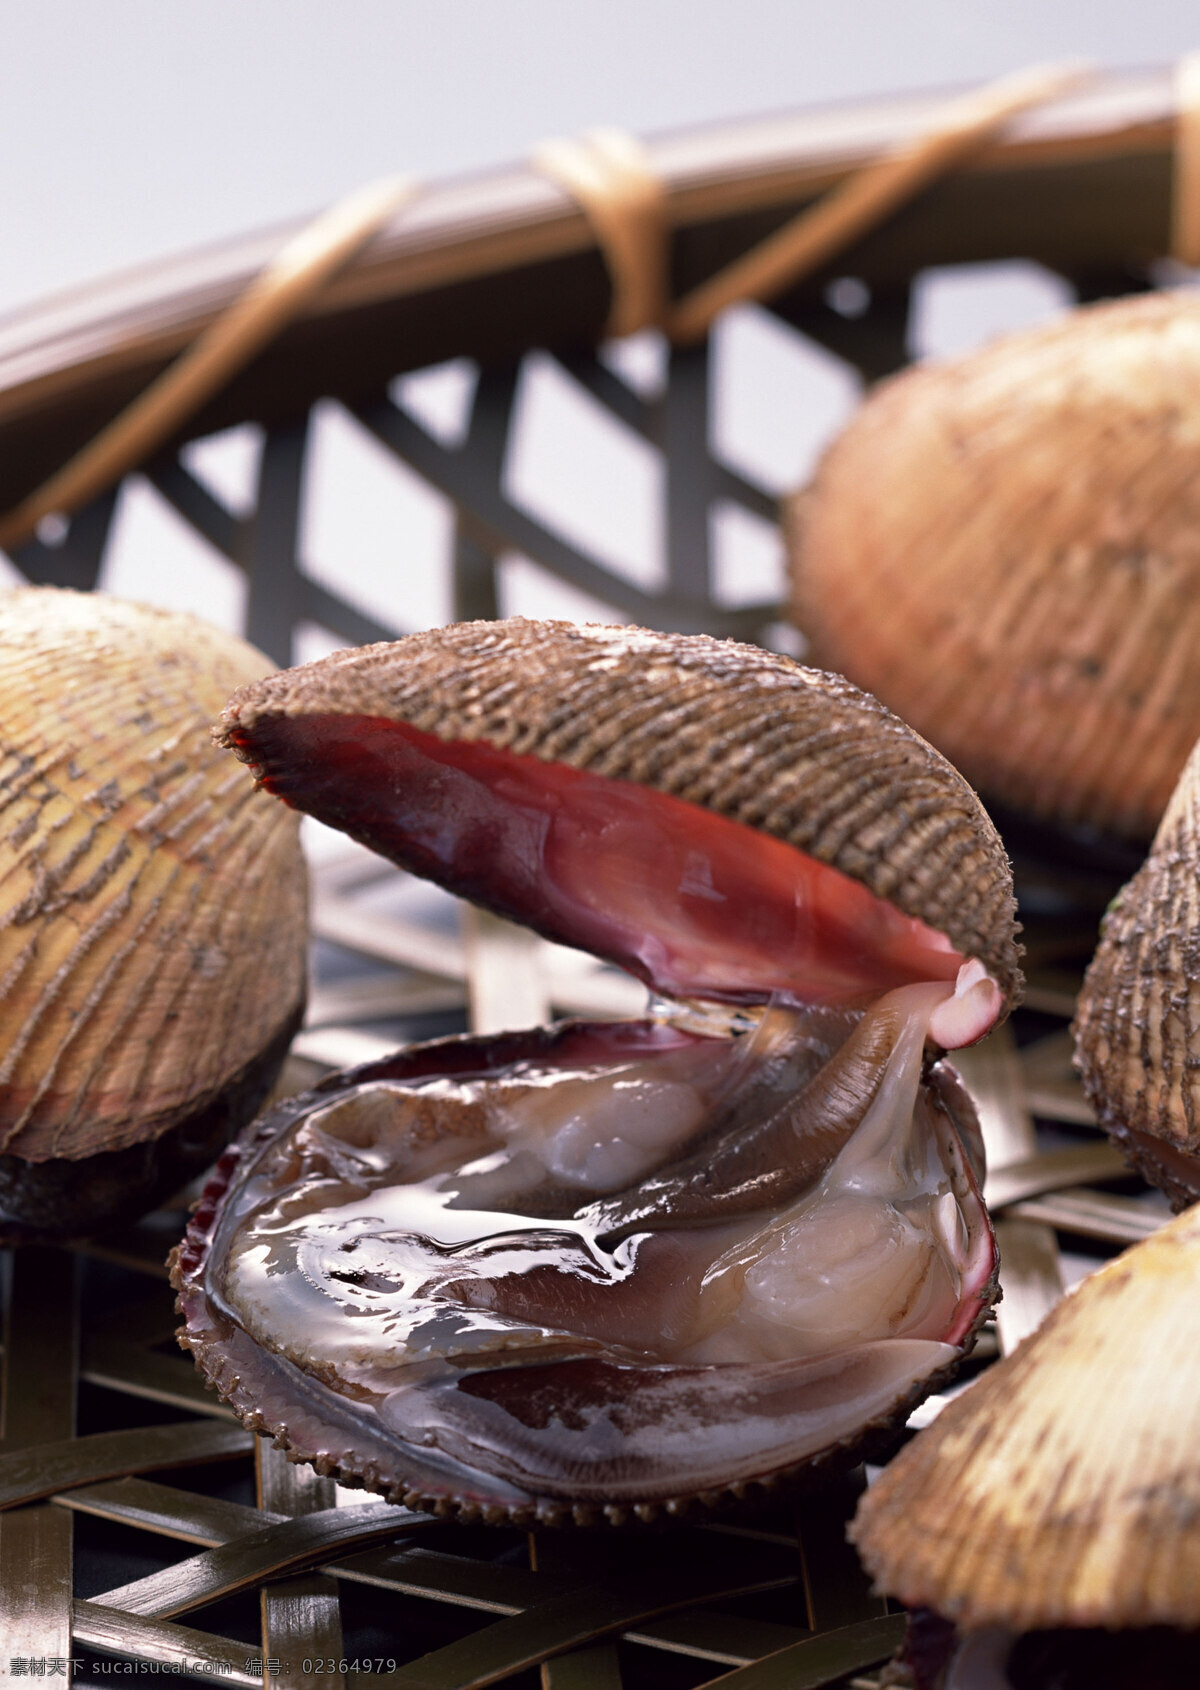 海鲜 生蚝 贝壳 海鲜食材 海螺 螺子肉海产品 海产品 贝类 海鲜水产 海鲜贝类 海底生物 新鲜海鲜 海鲜素材 海洋资源 食物原料 餐饮美食 摄影图库 摄影图片 高清图片 印刷图片 海洋生物 生物世界